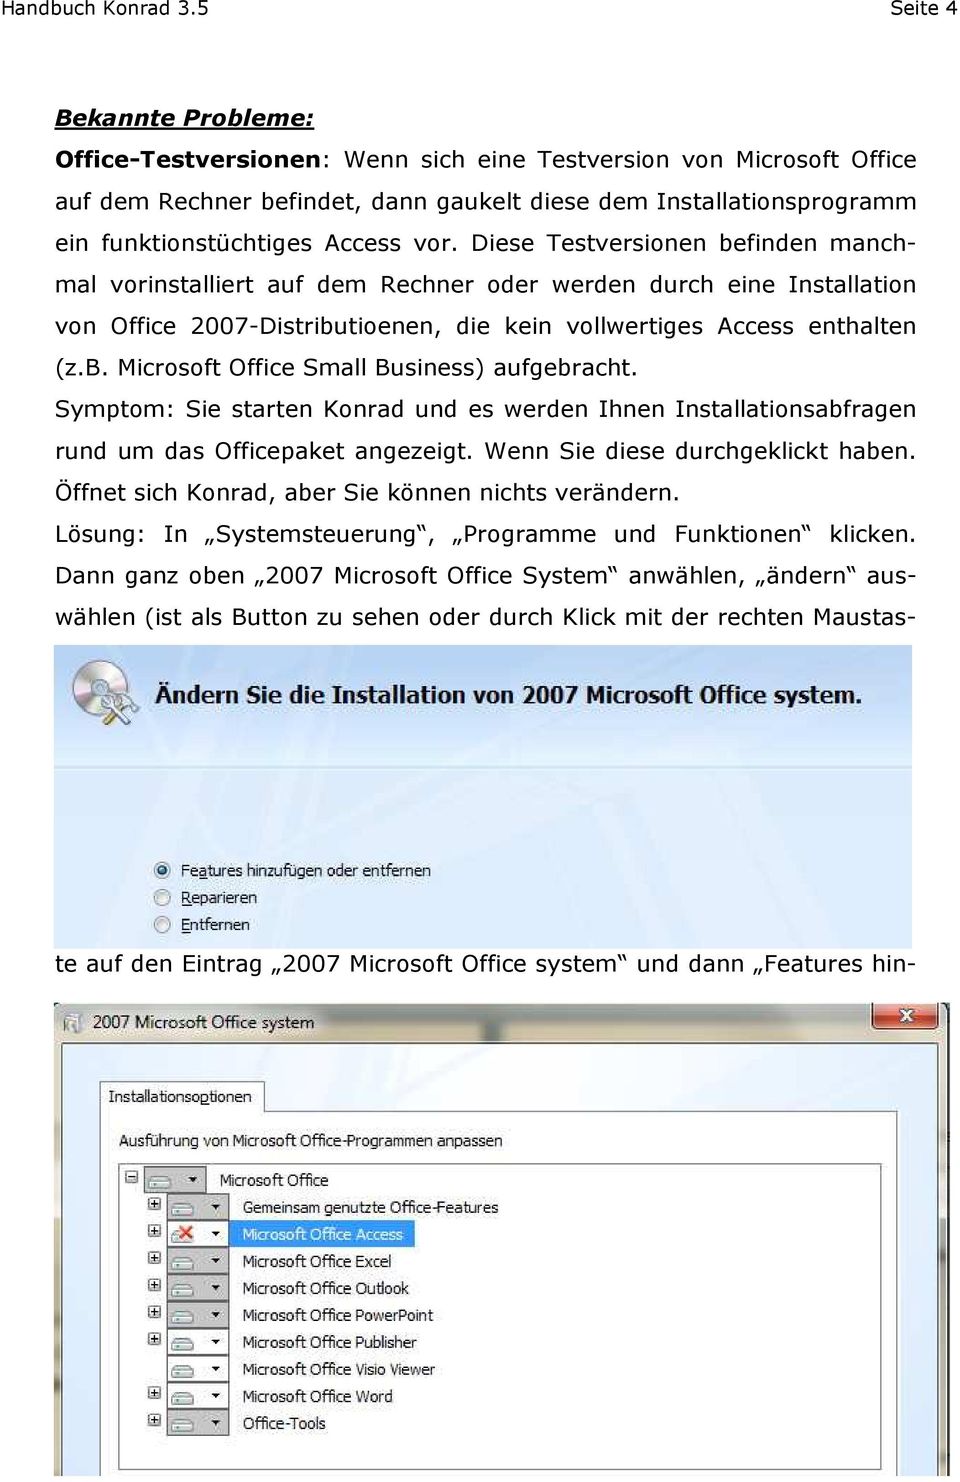 vor. Diese Testversionen befinden manchmal vorinstalliert auf dem Rechner oder werden durch eine Installation von Office 2007-Distributioenen, die kein vollwertiges Access enthalten (z.b. Microsoft Office Small Business) aufgebracht.